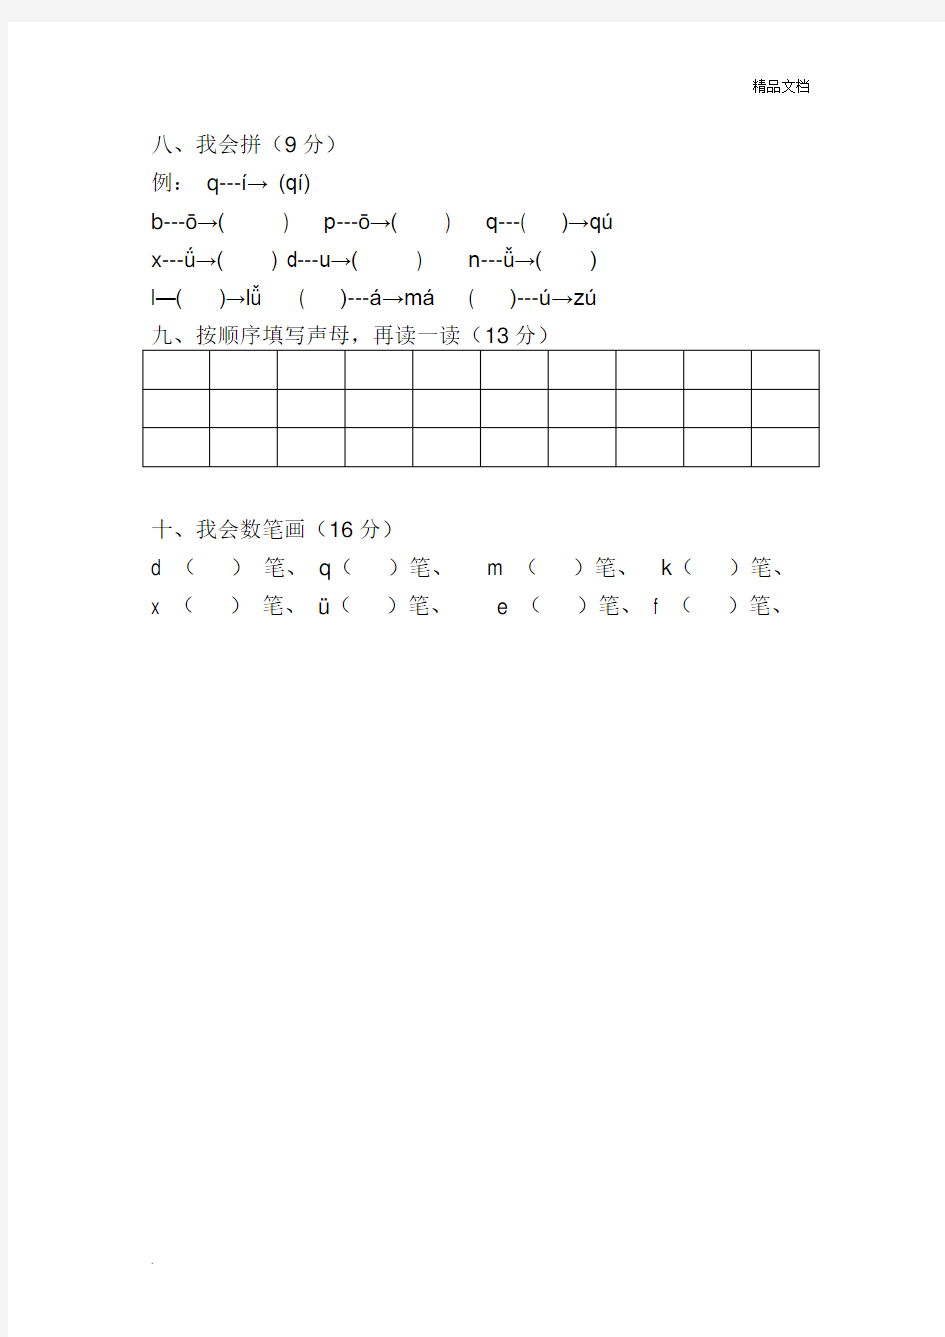 学前班拼音练习题 (1)